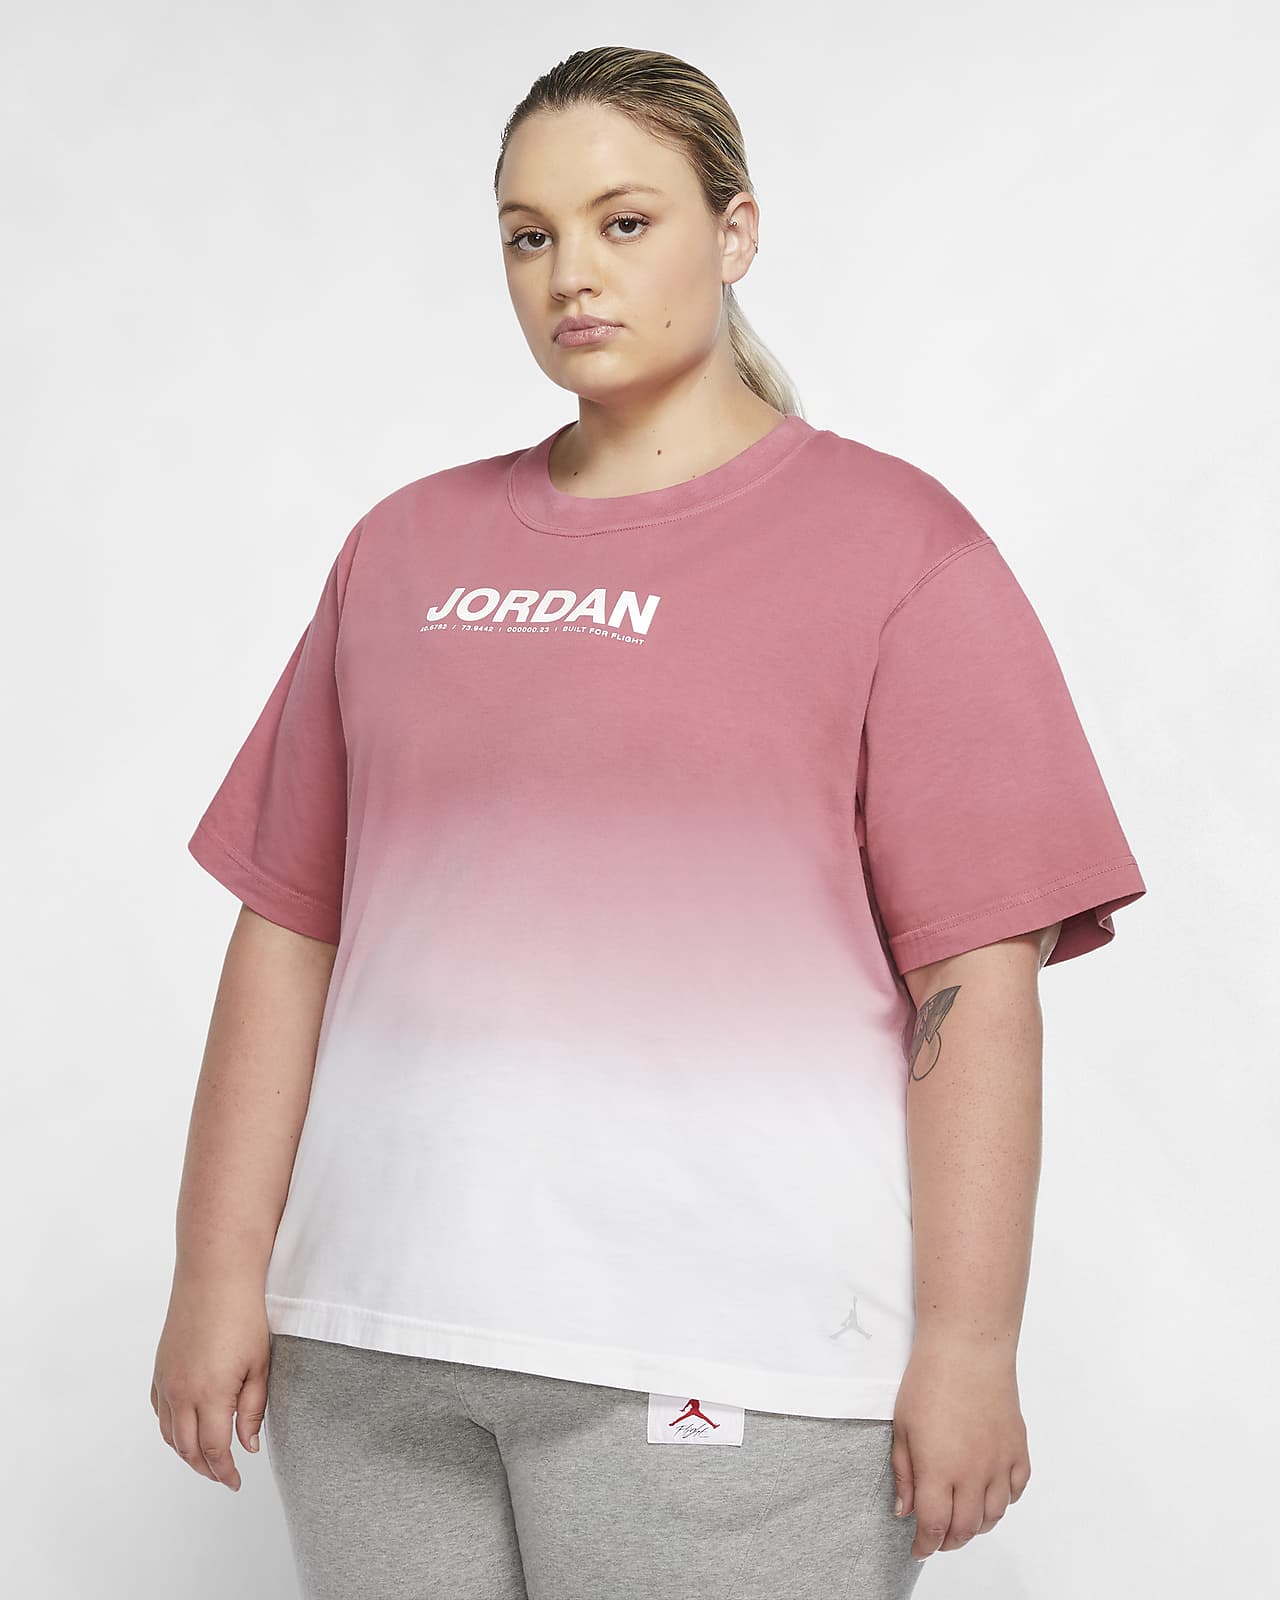 jordan woman size